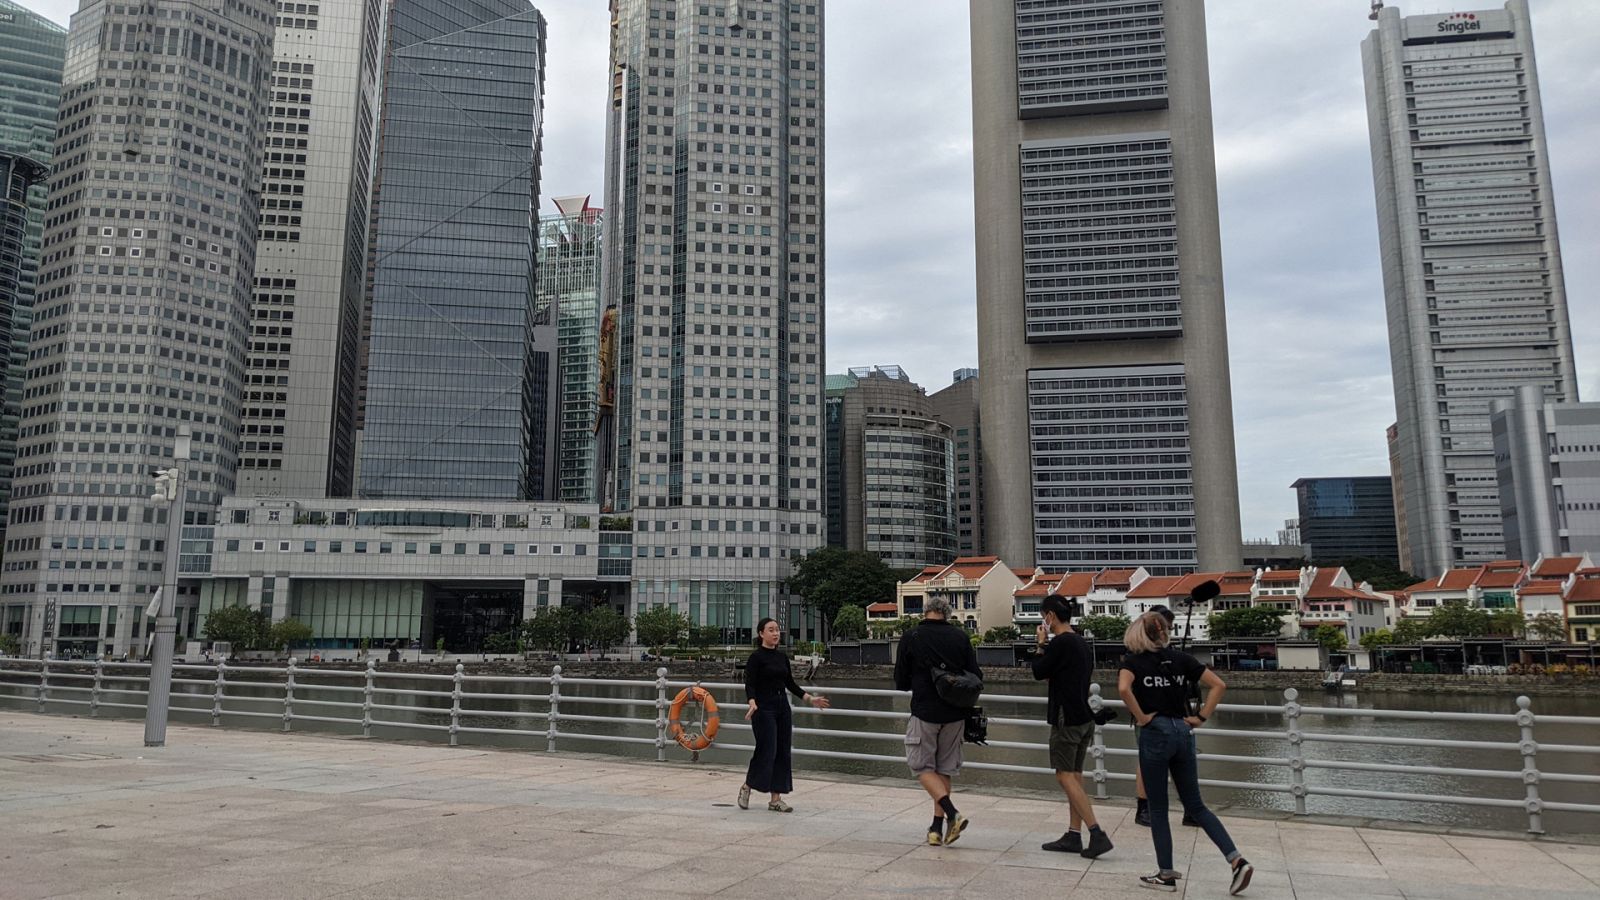 En busca de secretos - Episodio 5: Singapur - ver ahora